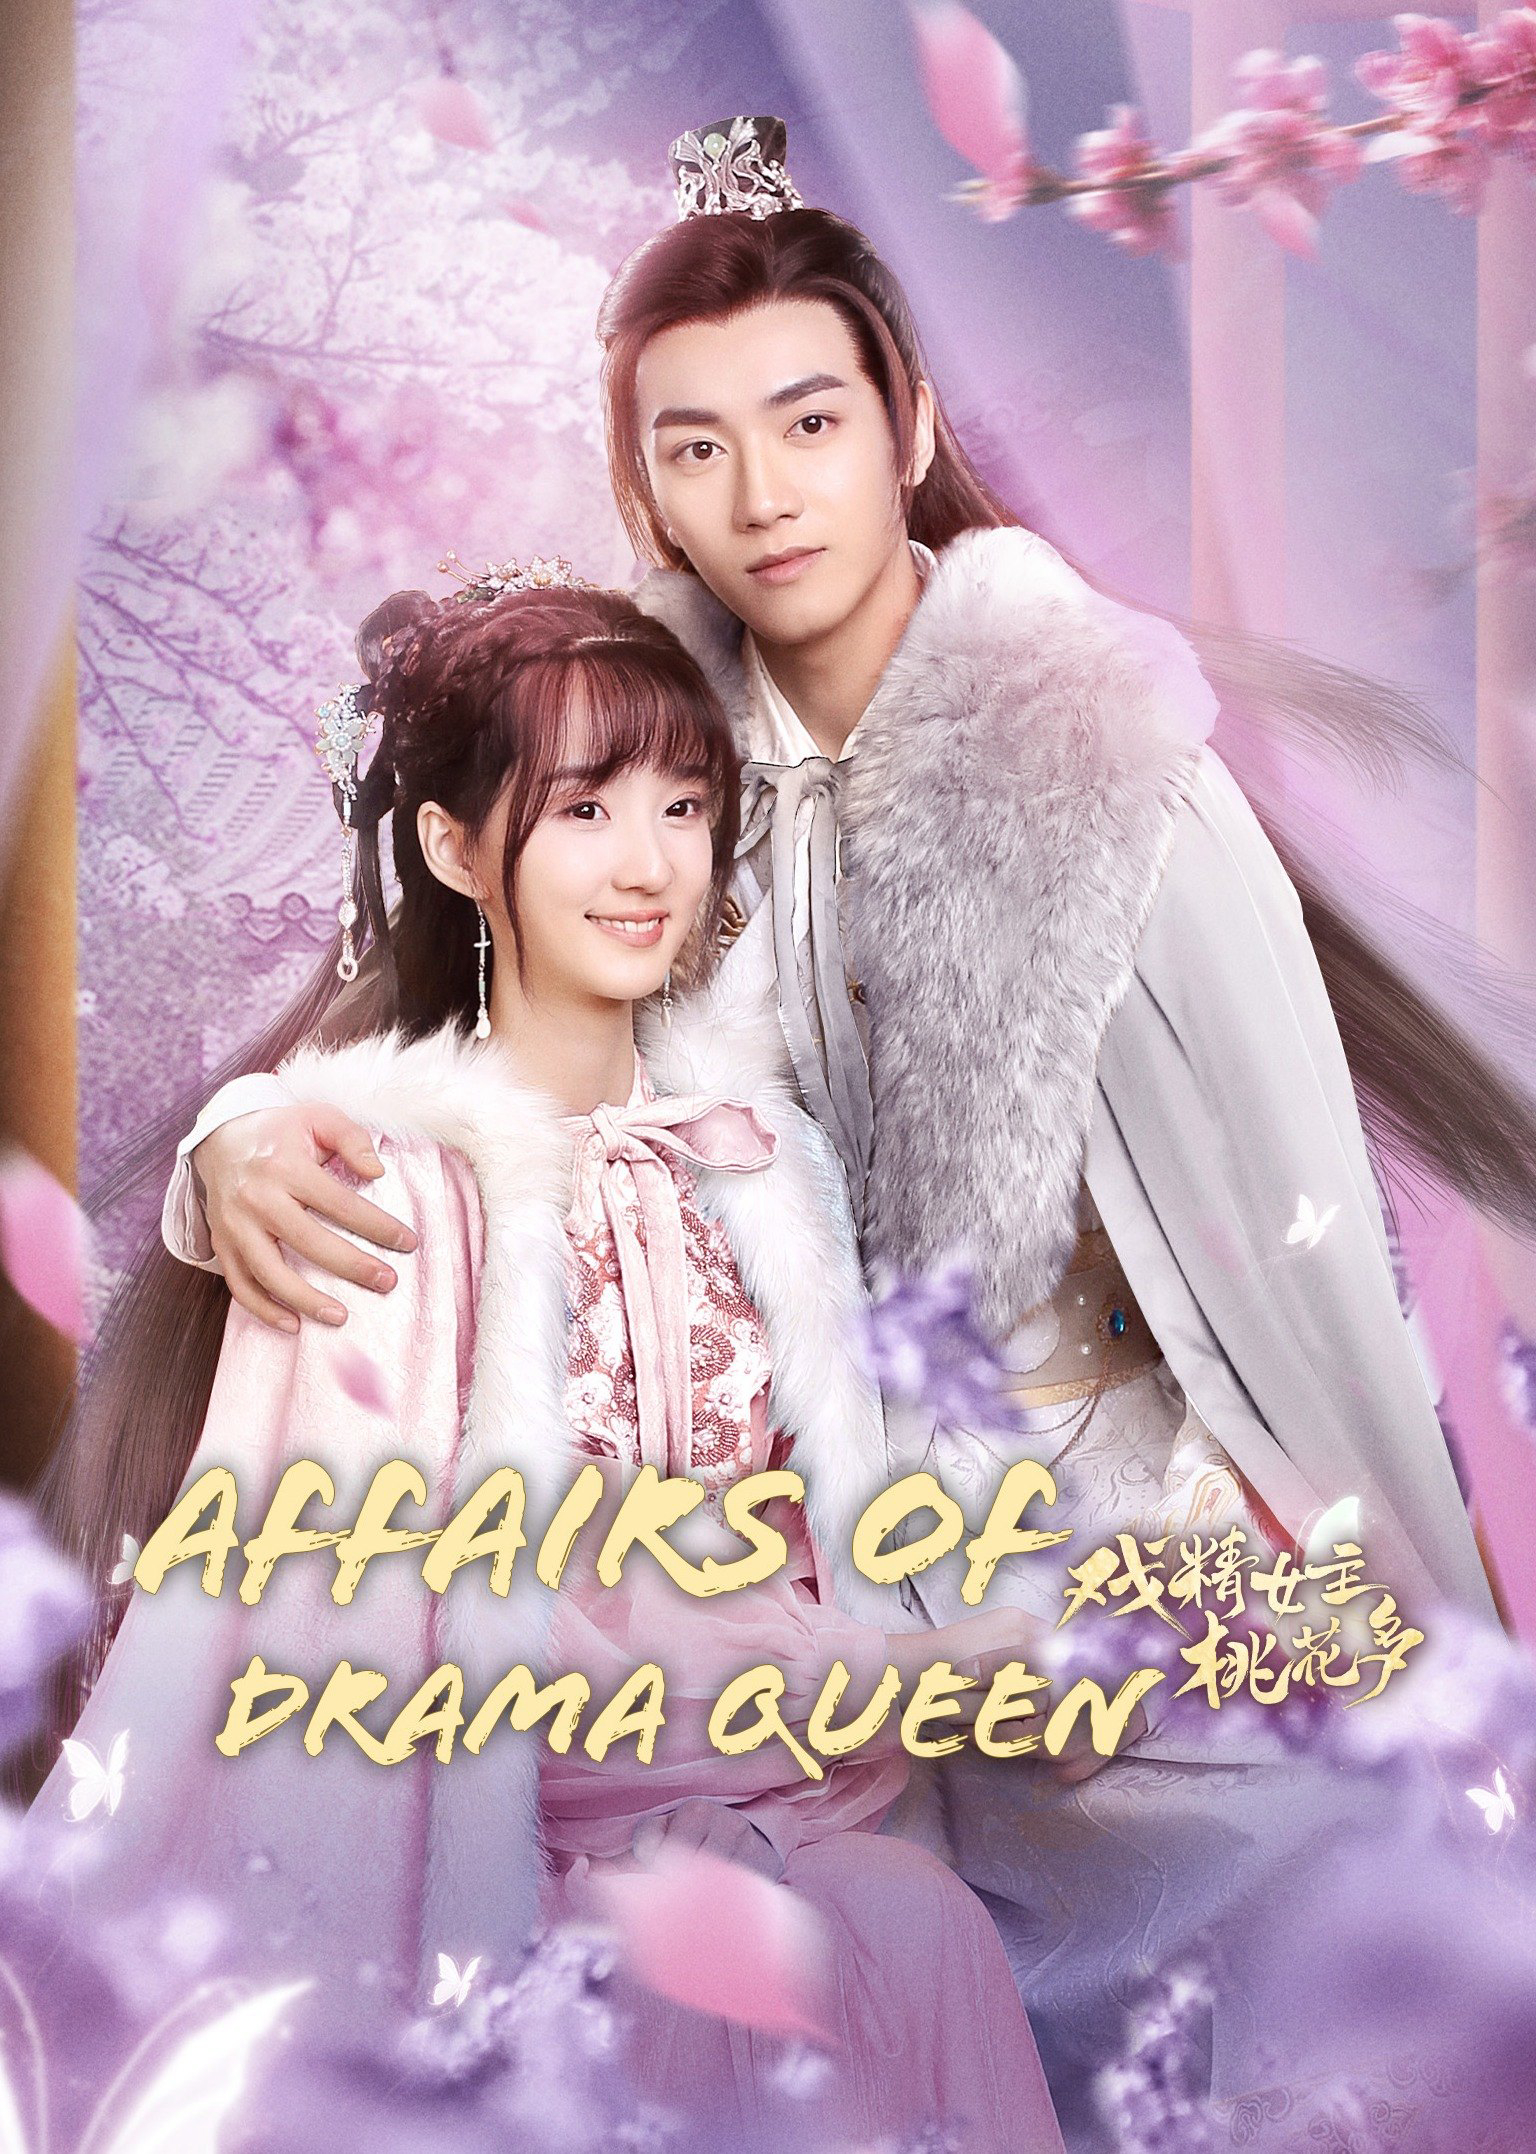 Poster Phim Nữ Chính Diễn Sâu Lắm Mối Theo (Affairs of Drama Queen)